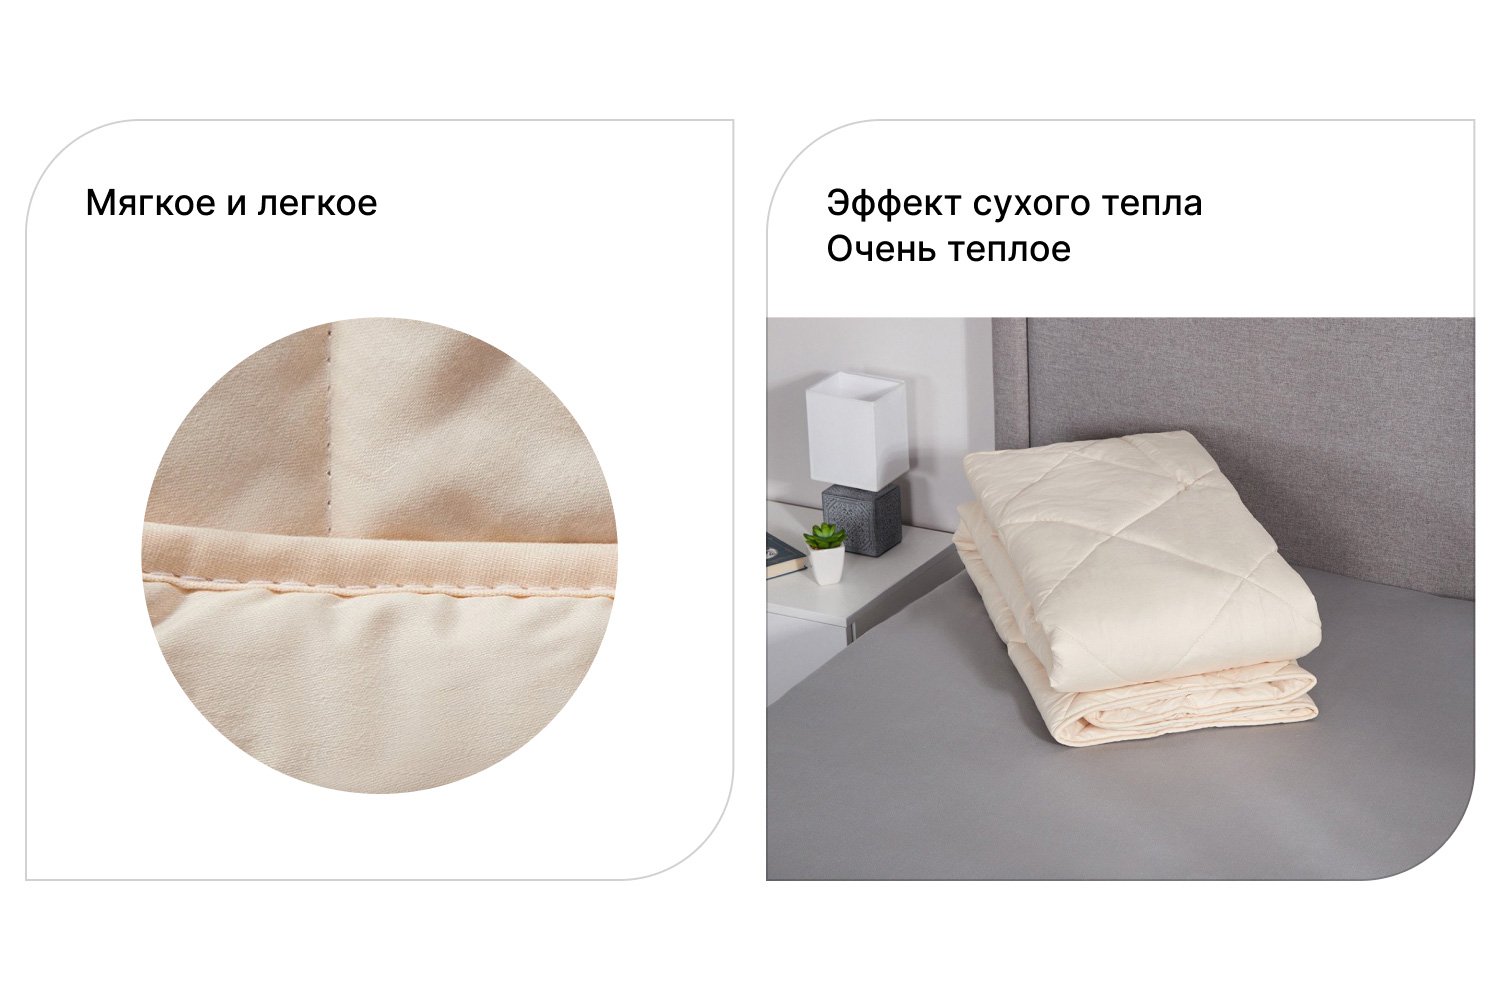 Как выбрать одеяло по размеру кровати